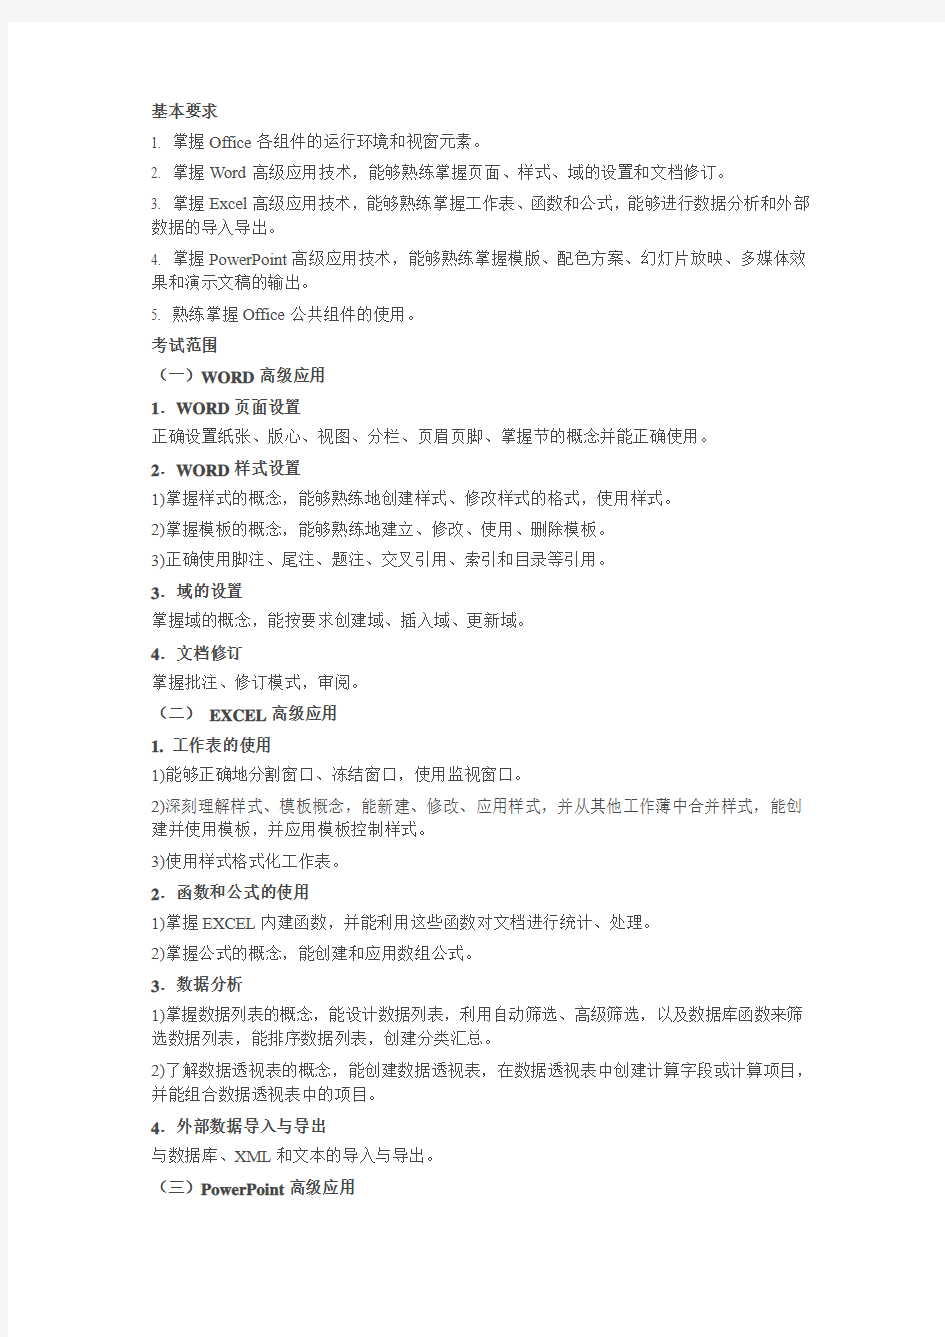 浙江省计算机二级办公软件高级应用技术考试大纲